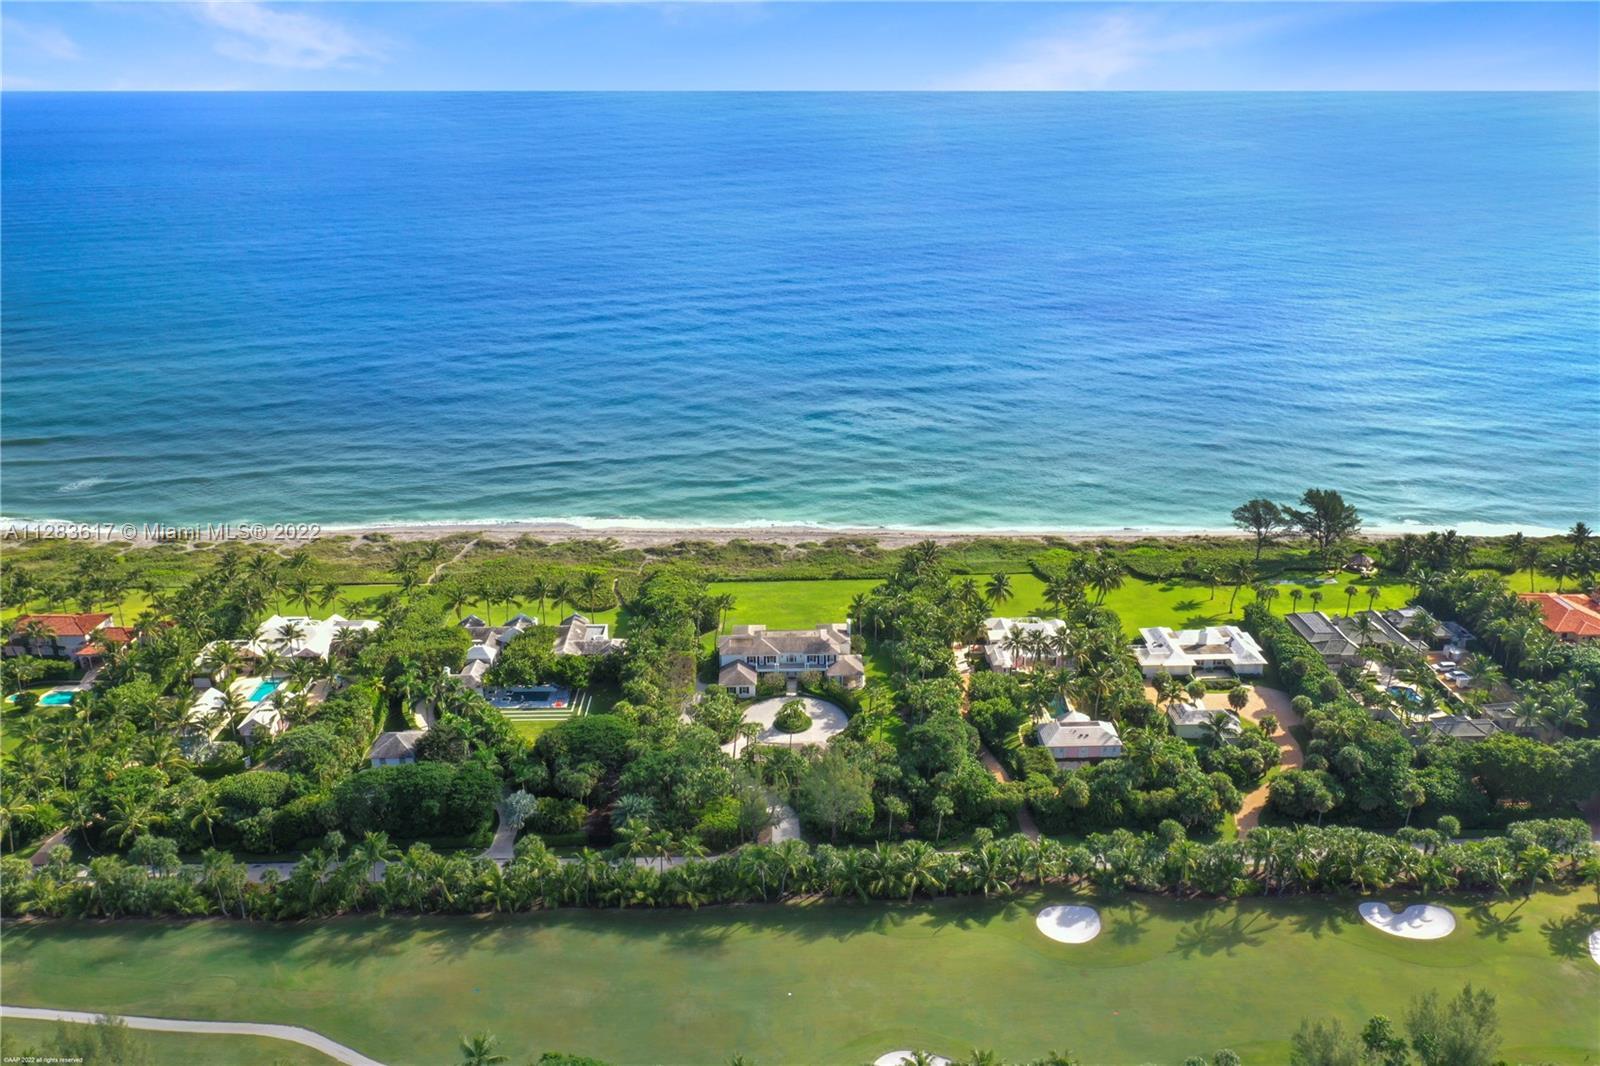 16 Jupiter Island, FL Homes for Sale | Jupiter Island Real Estate | NV  Realty Group